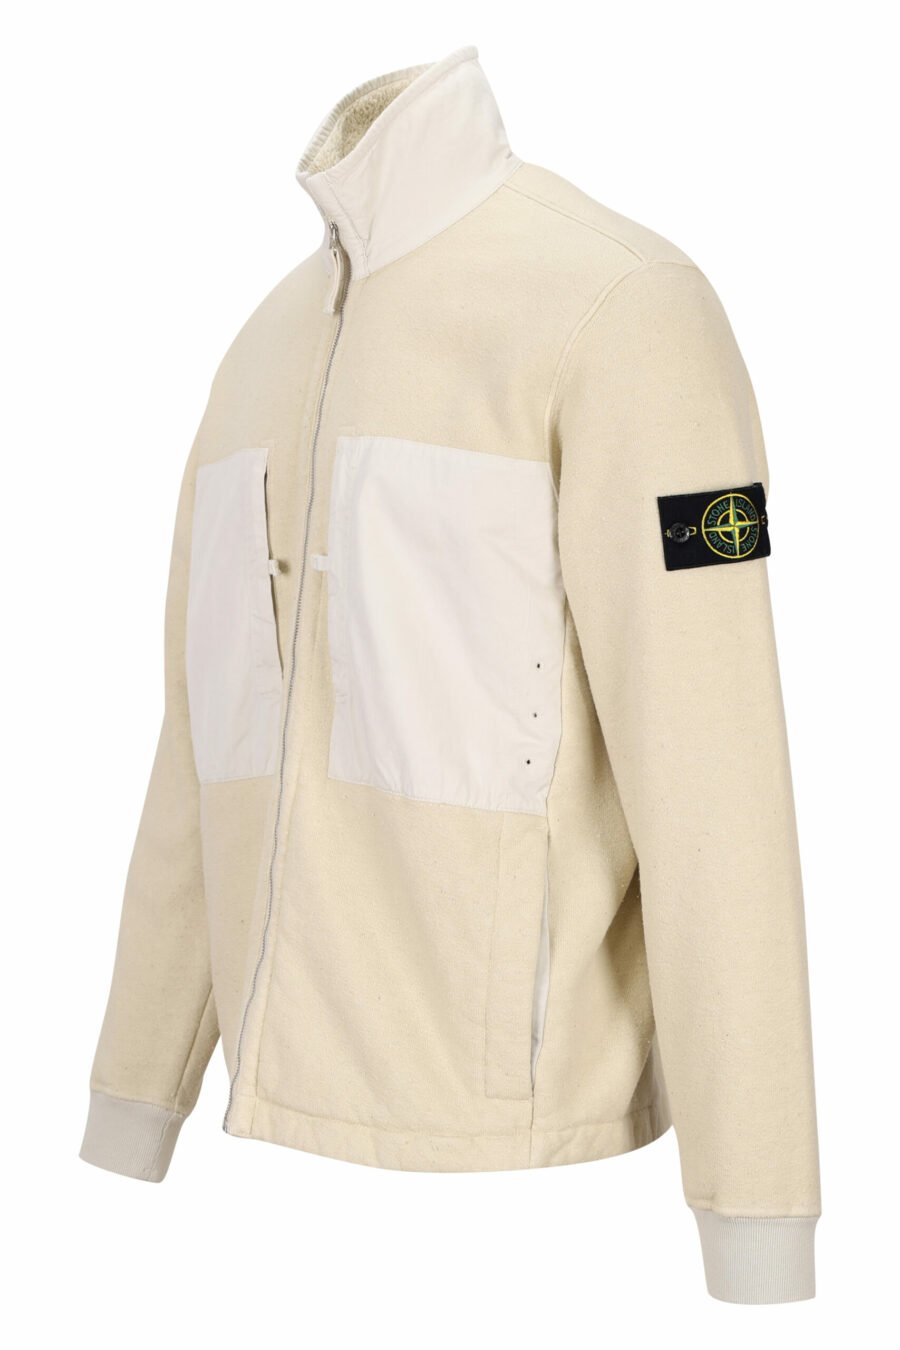 Beigefarbenes Mix-Sweatshirt mit Reißverschluss und Fleecekragen - 8052572757938 1 skaliert